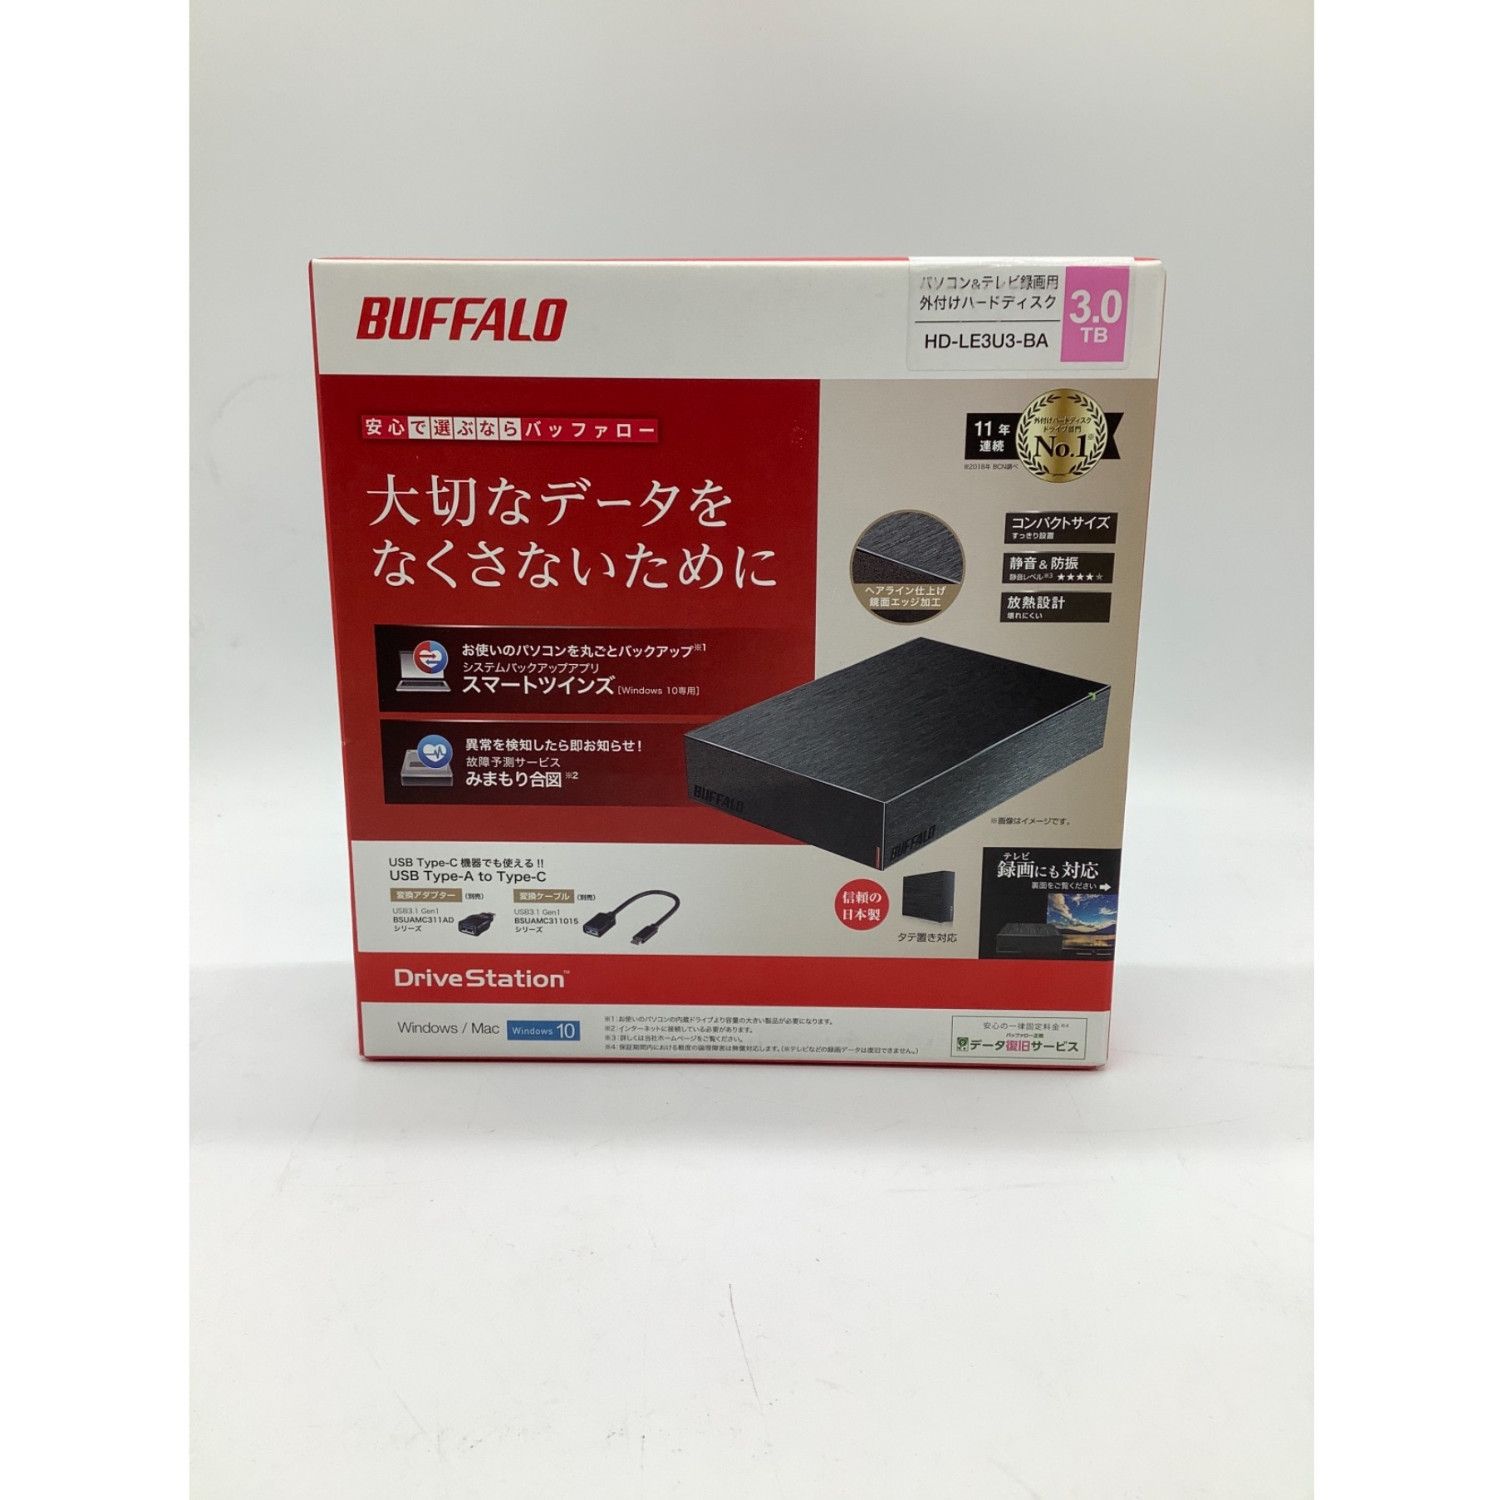 BUFFALO (バッファロ) 外付ケハードディスク 未使用品 3.0TB HD-LE3U3 